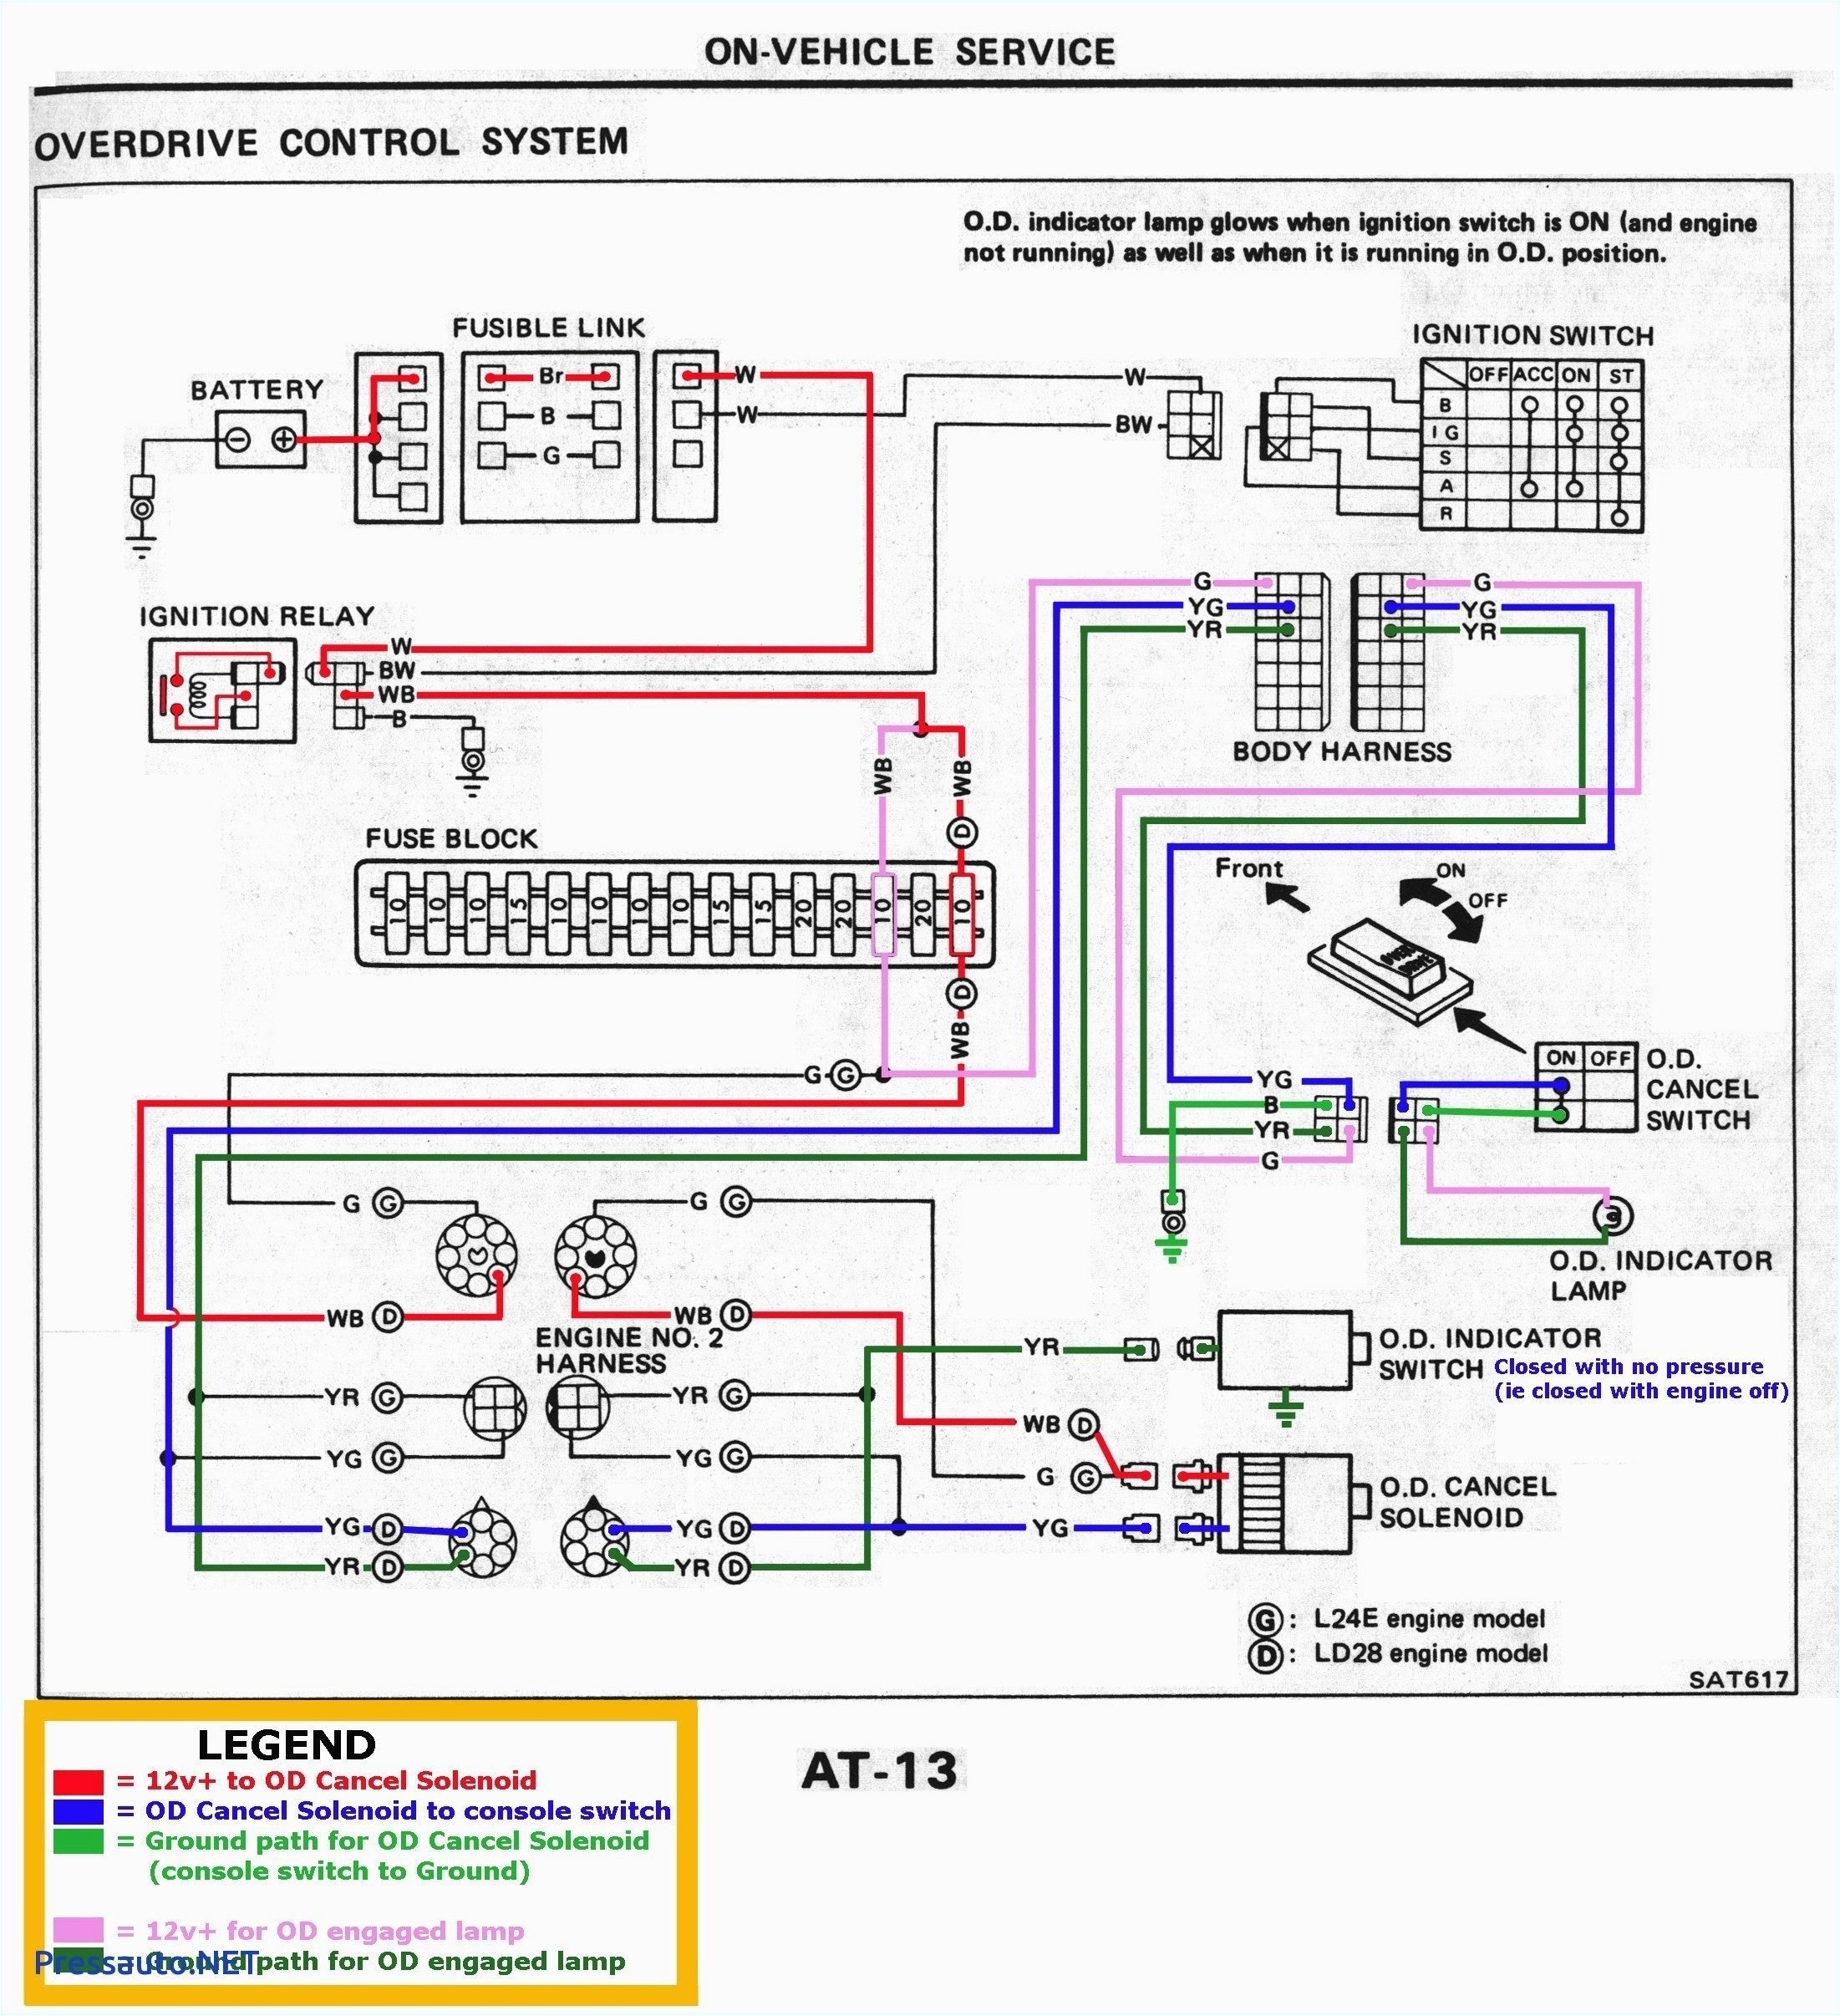 wiring garage lights diagram best of garage lighting wiring diagram uk best electrical wiring diagram uk